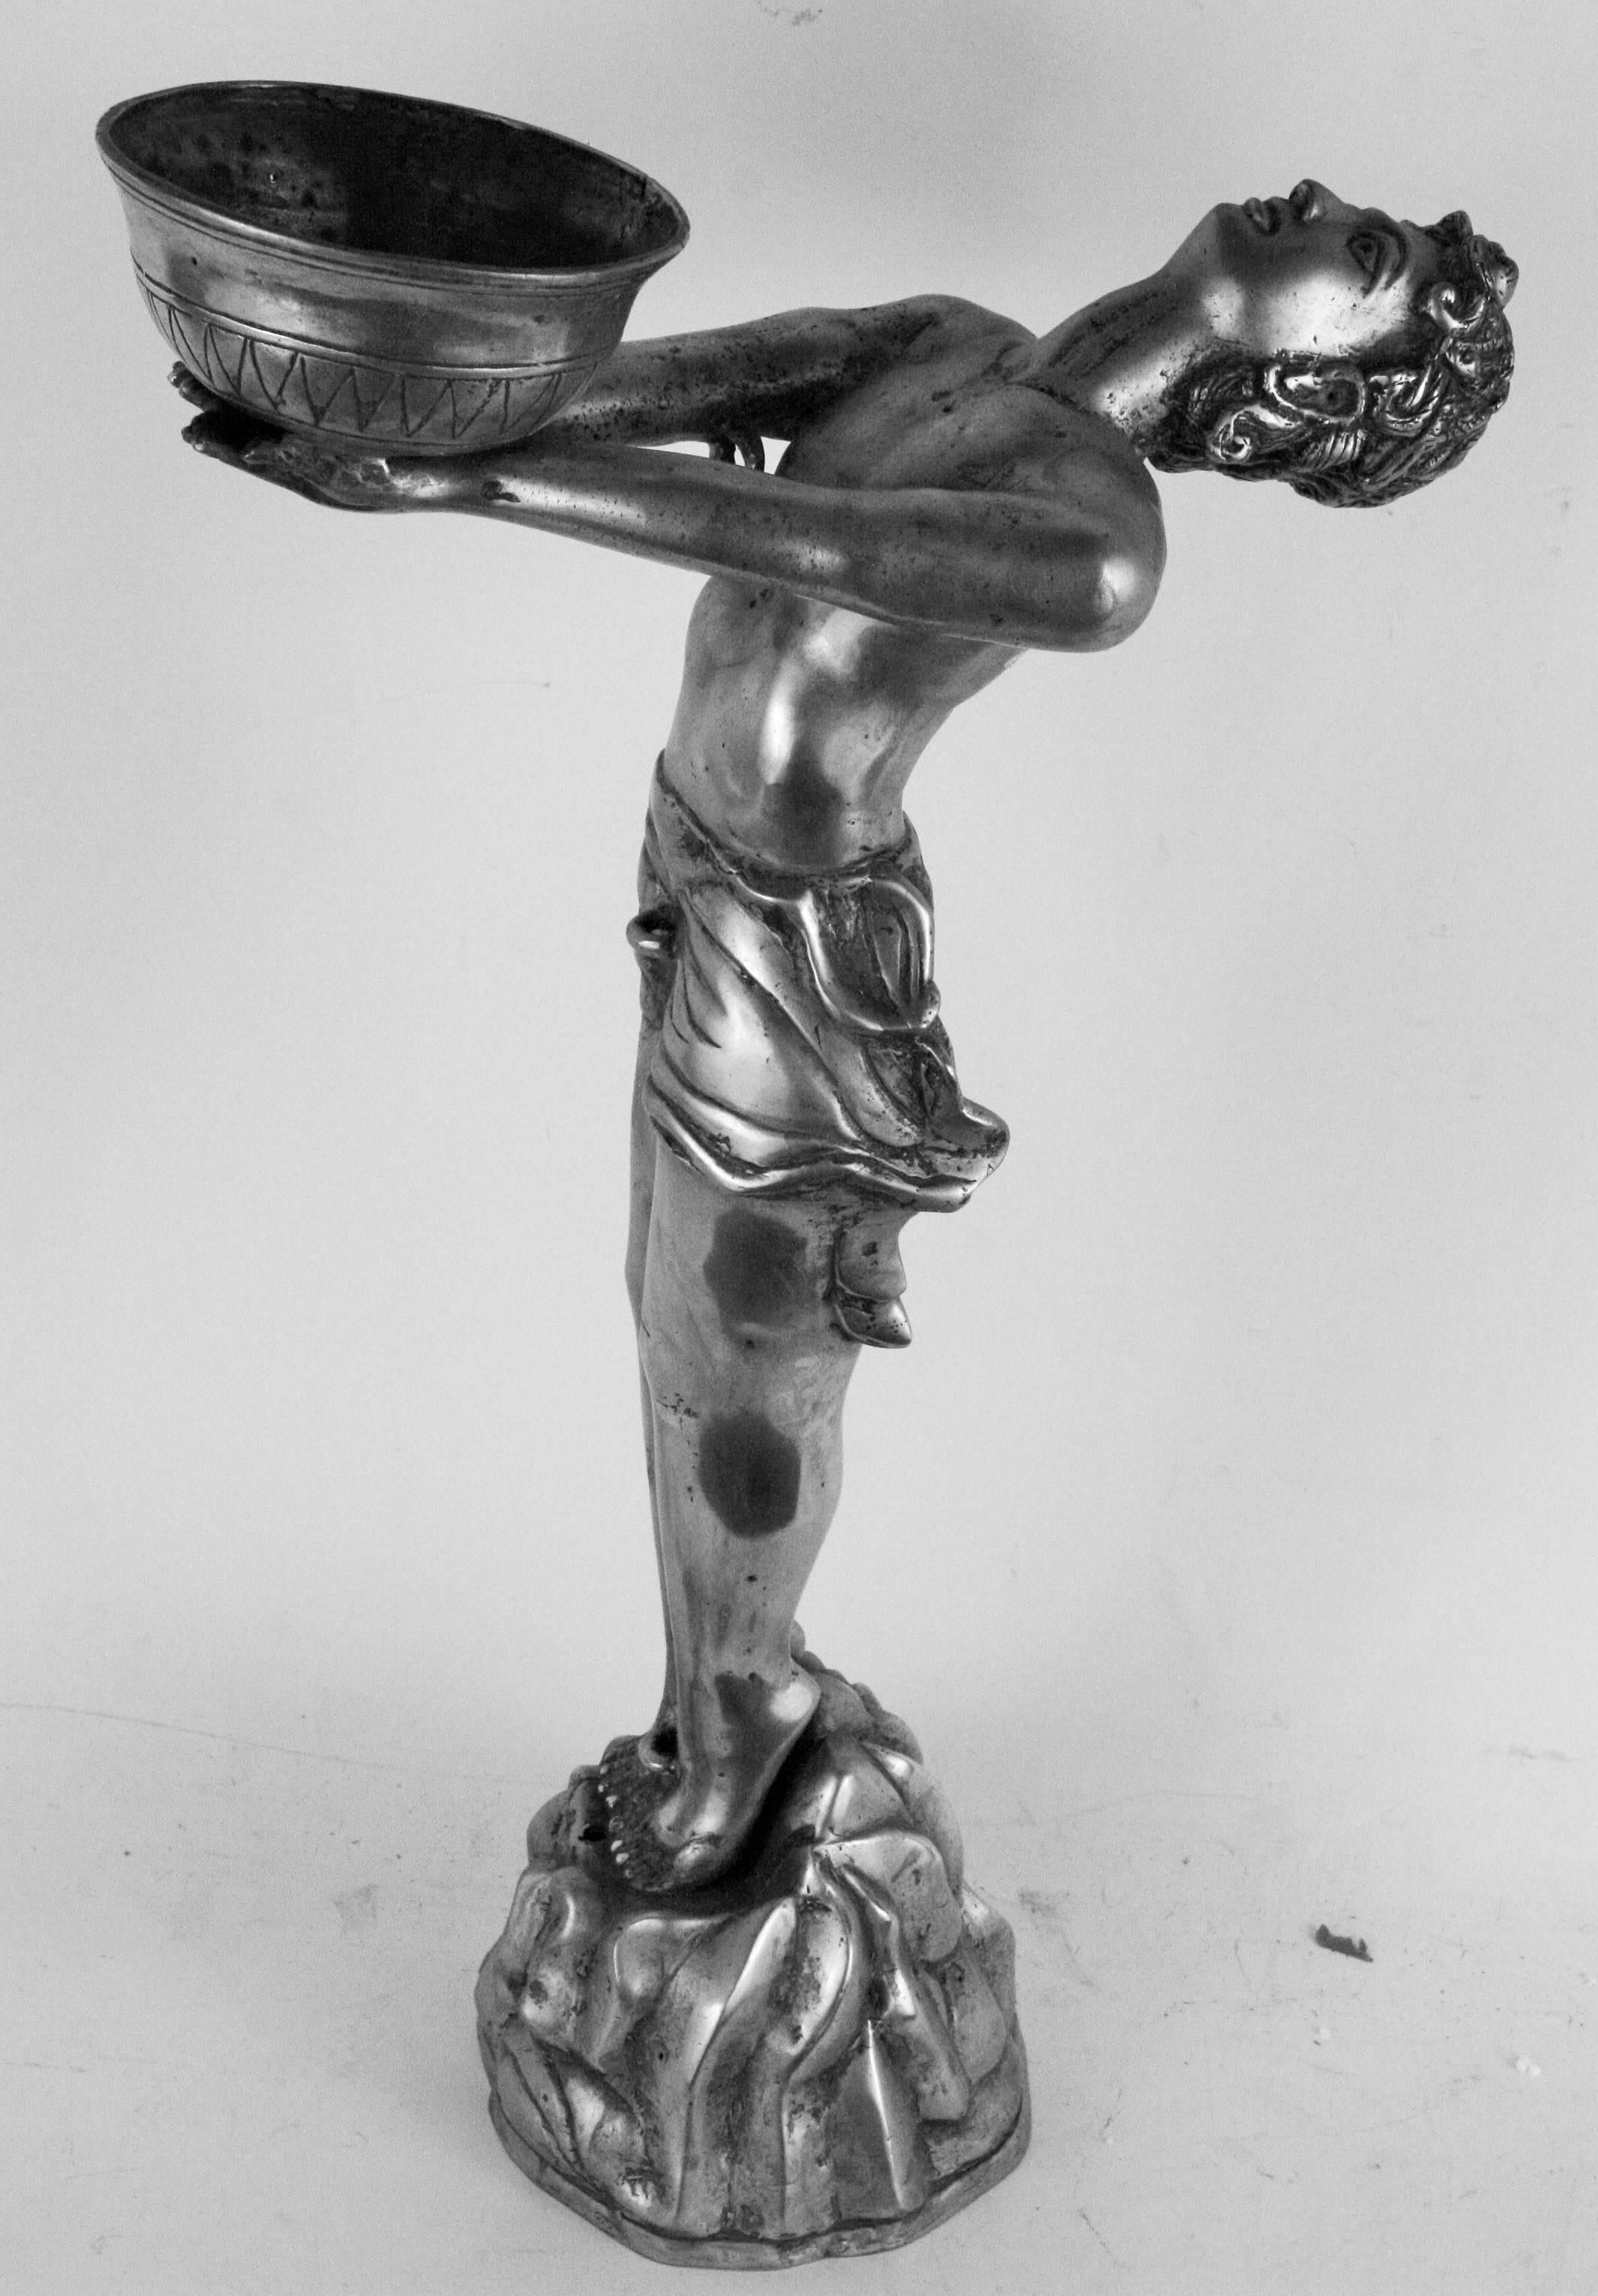 1-4136 Vieille sculpture figurative en laiton argenté de style Art Déco tenant une soucoupe sans marque de fabricant.